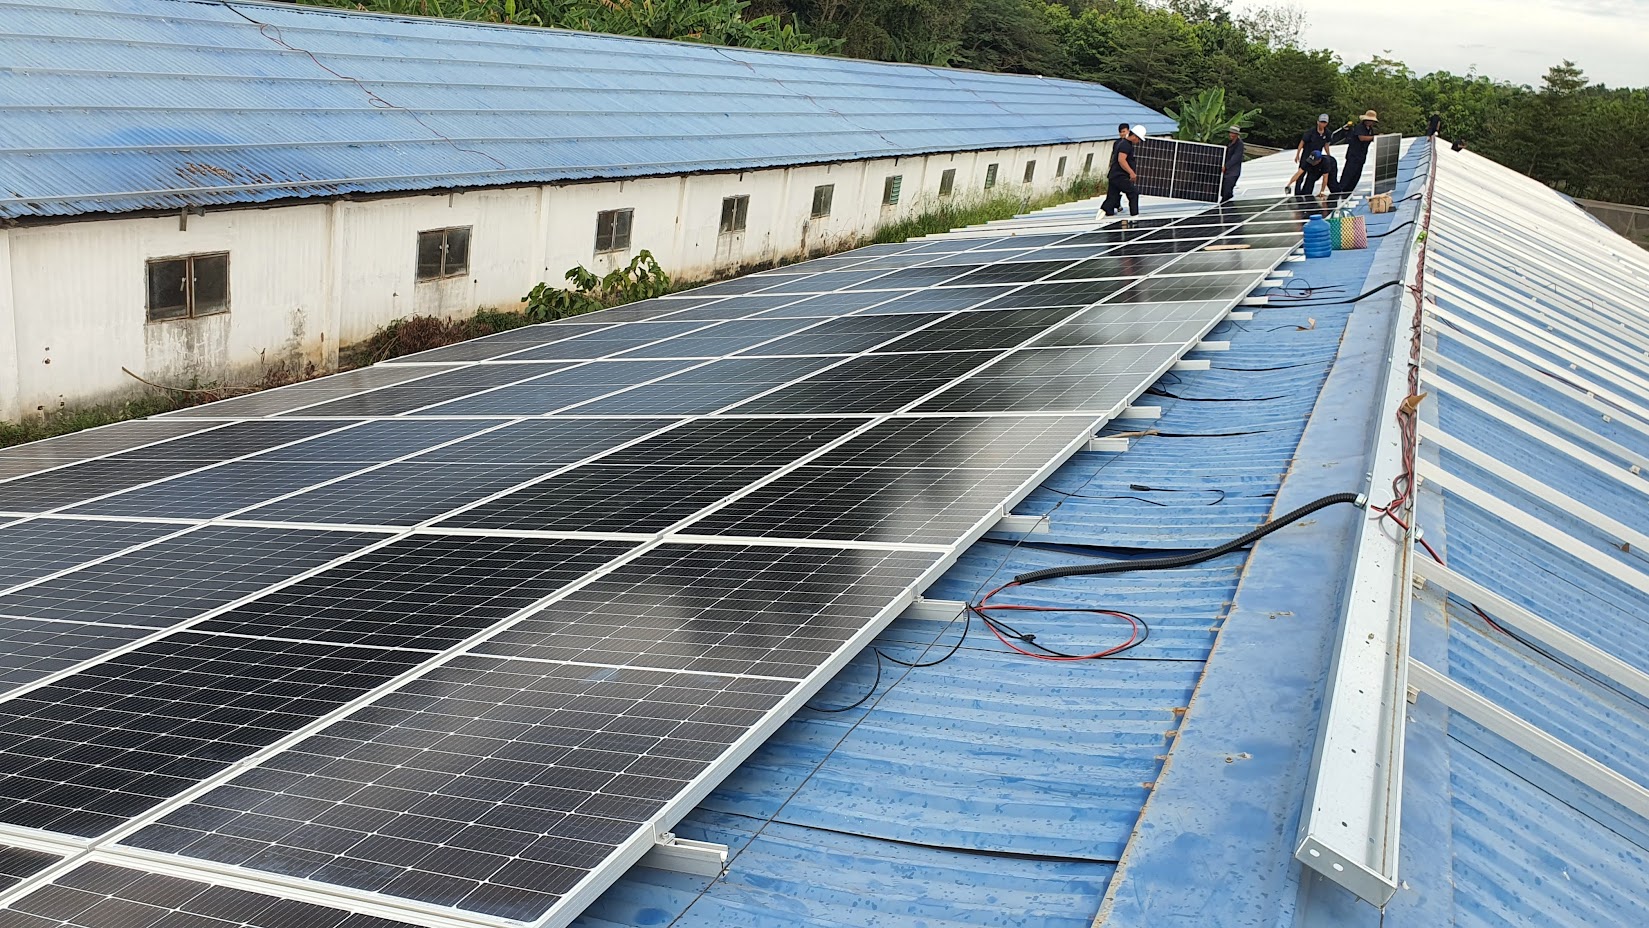 Dự án sử dụng 2.248 tấm pin năng lượng mặt trời ANTARIS GERMANY - MONO 445Wp hiệu suất cao